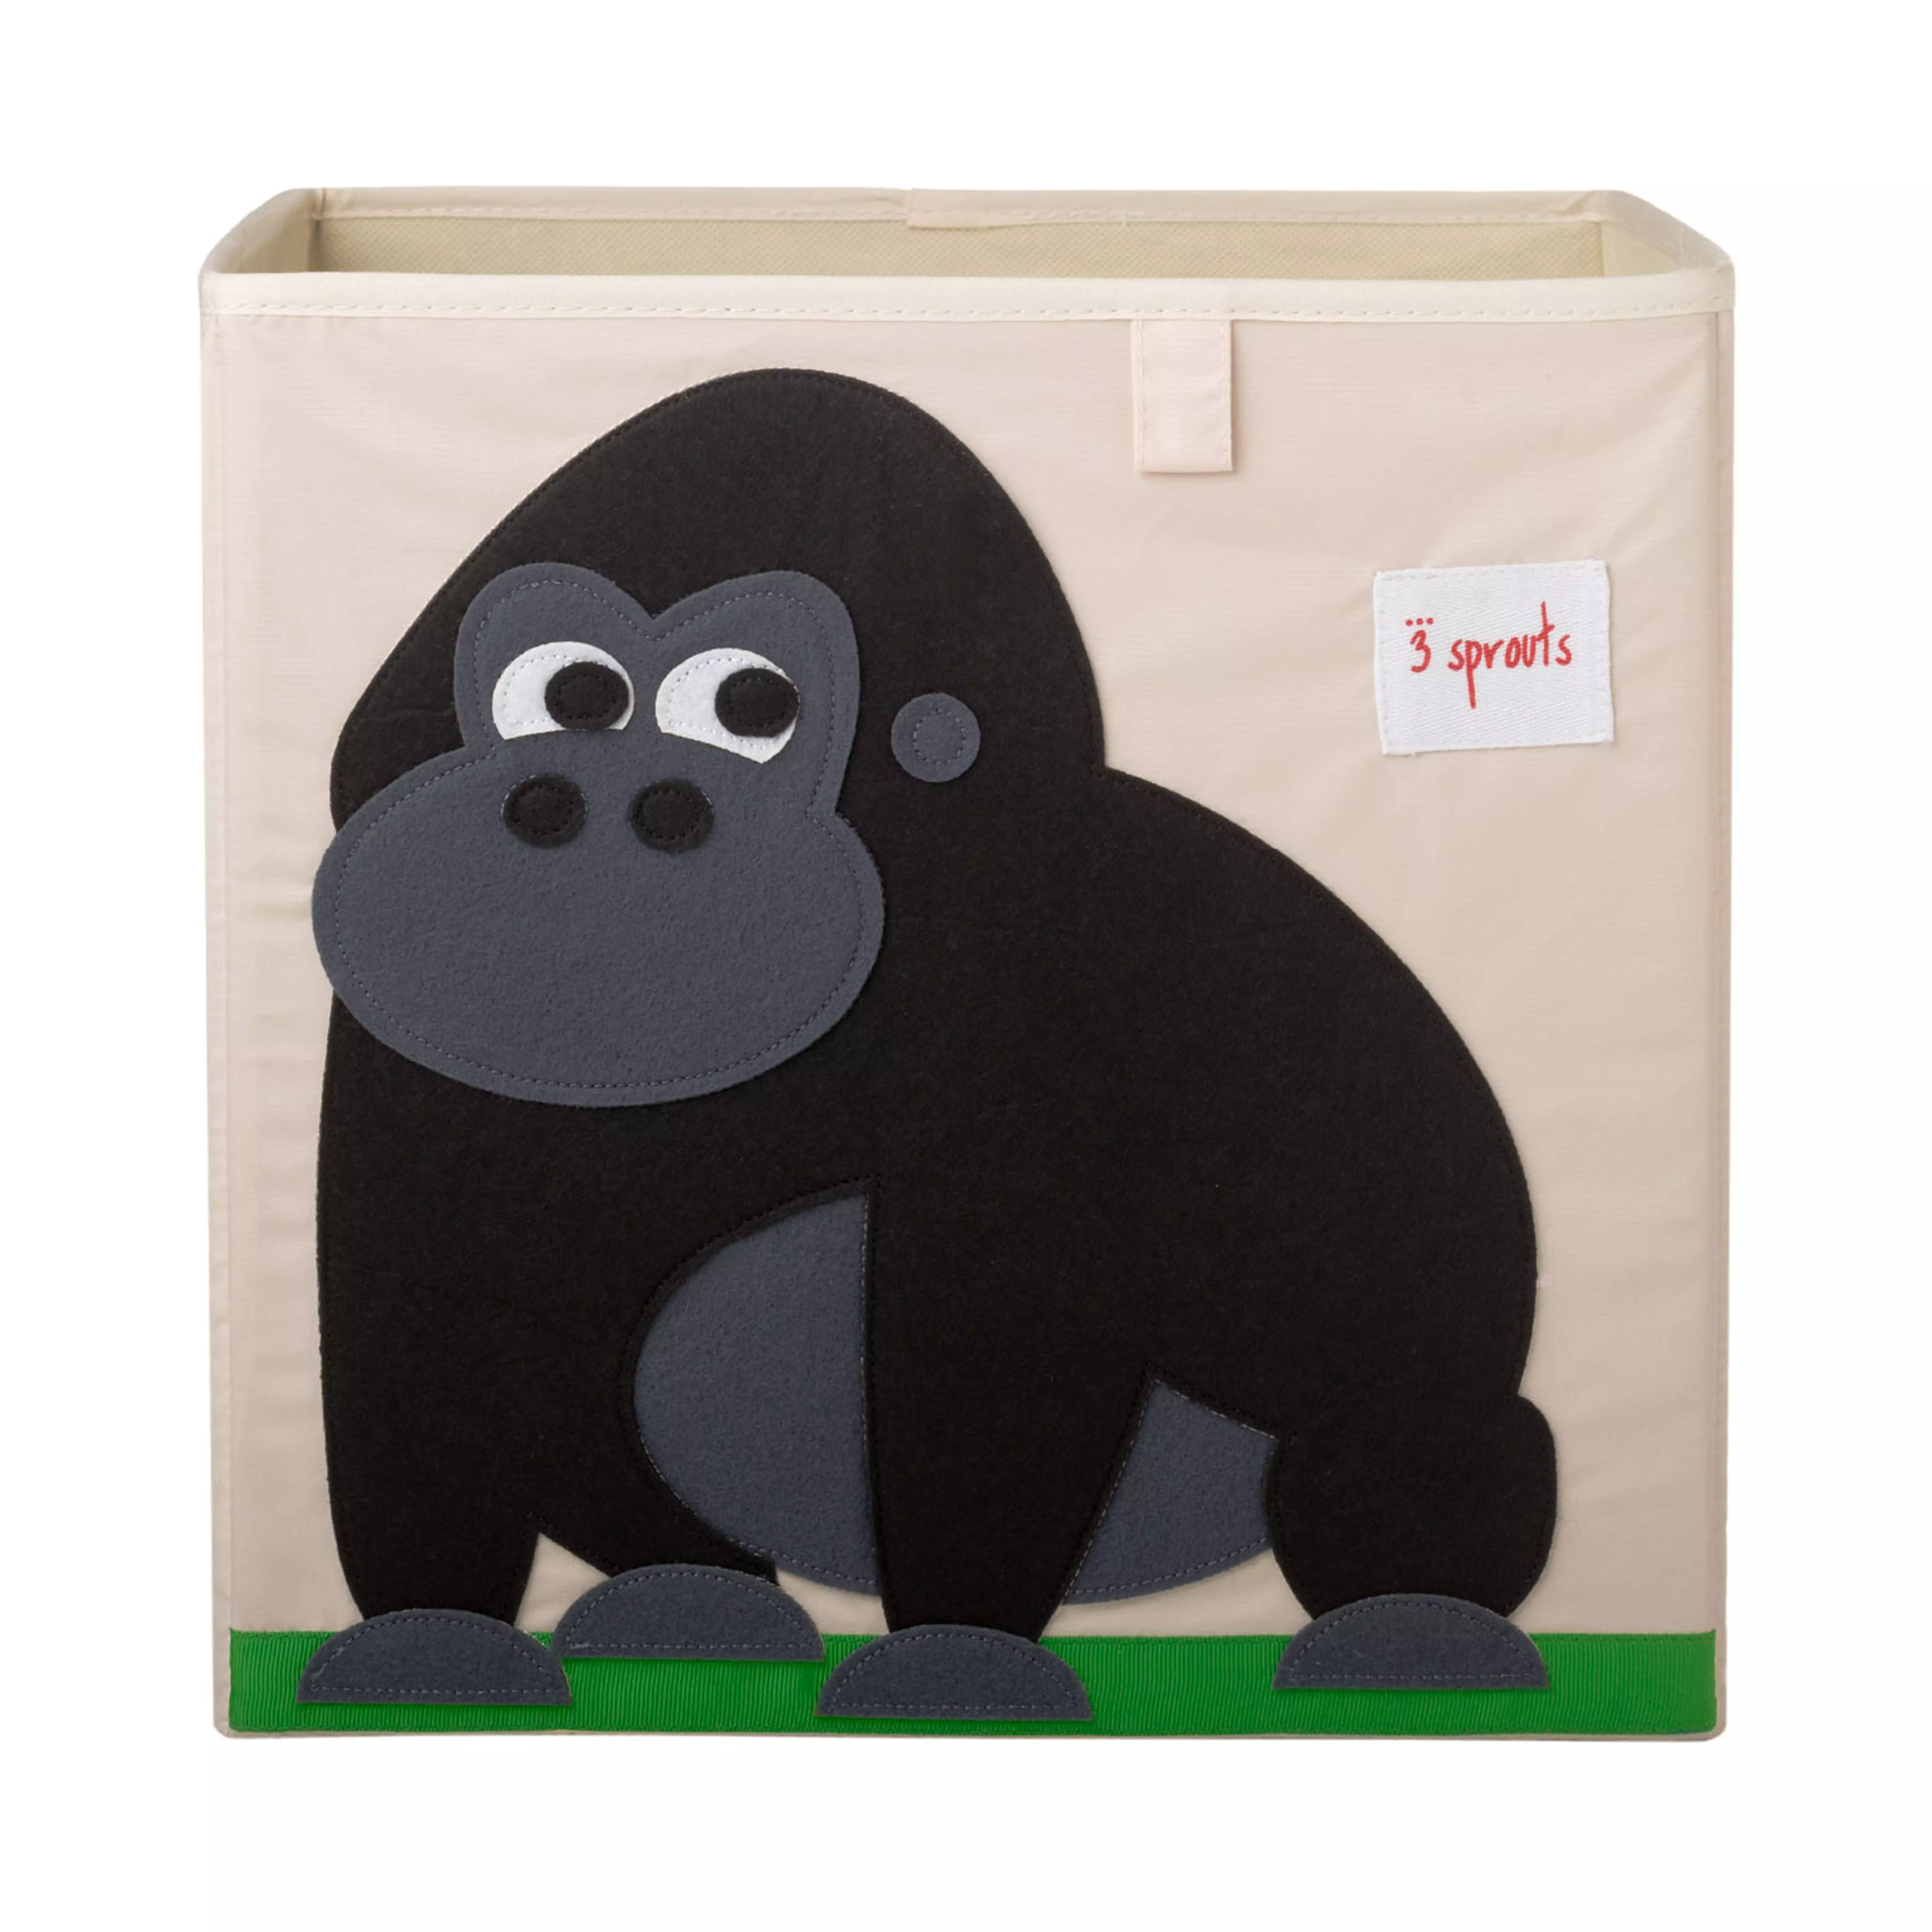 Sprouts Storage Box Black Gorilla